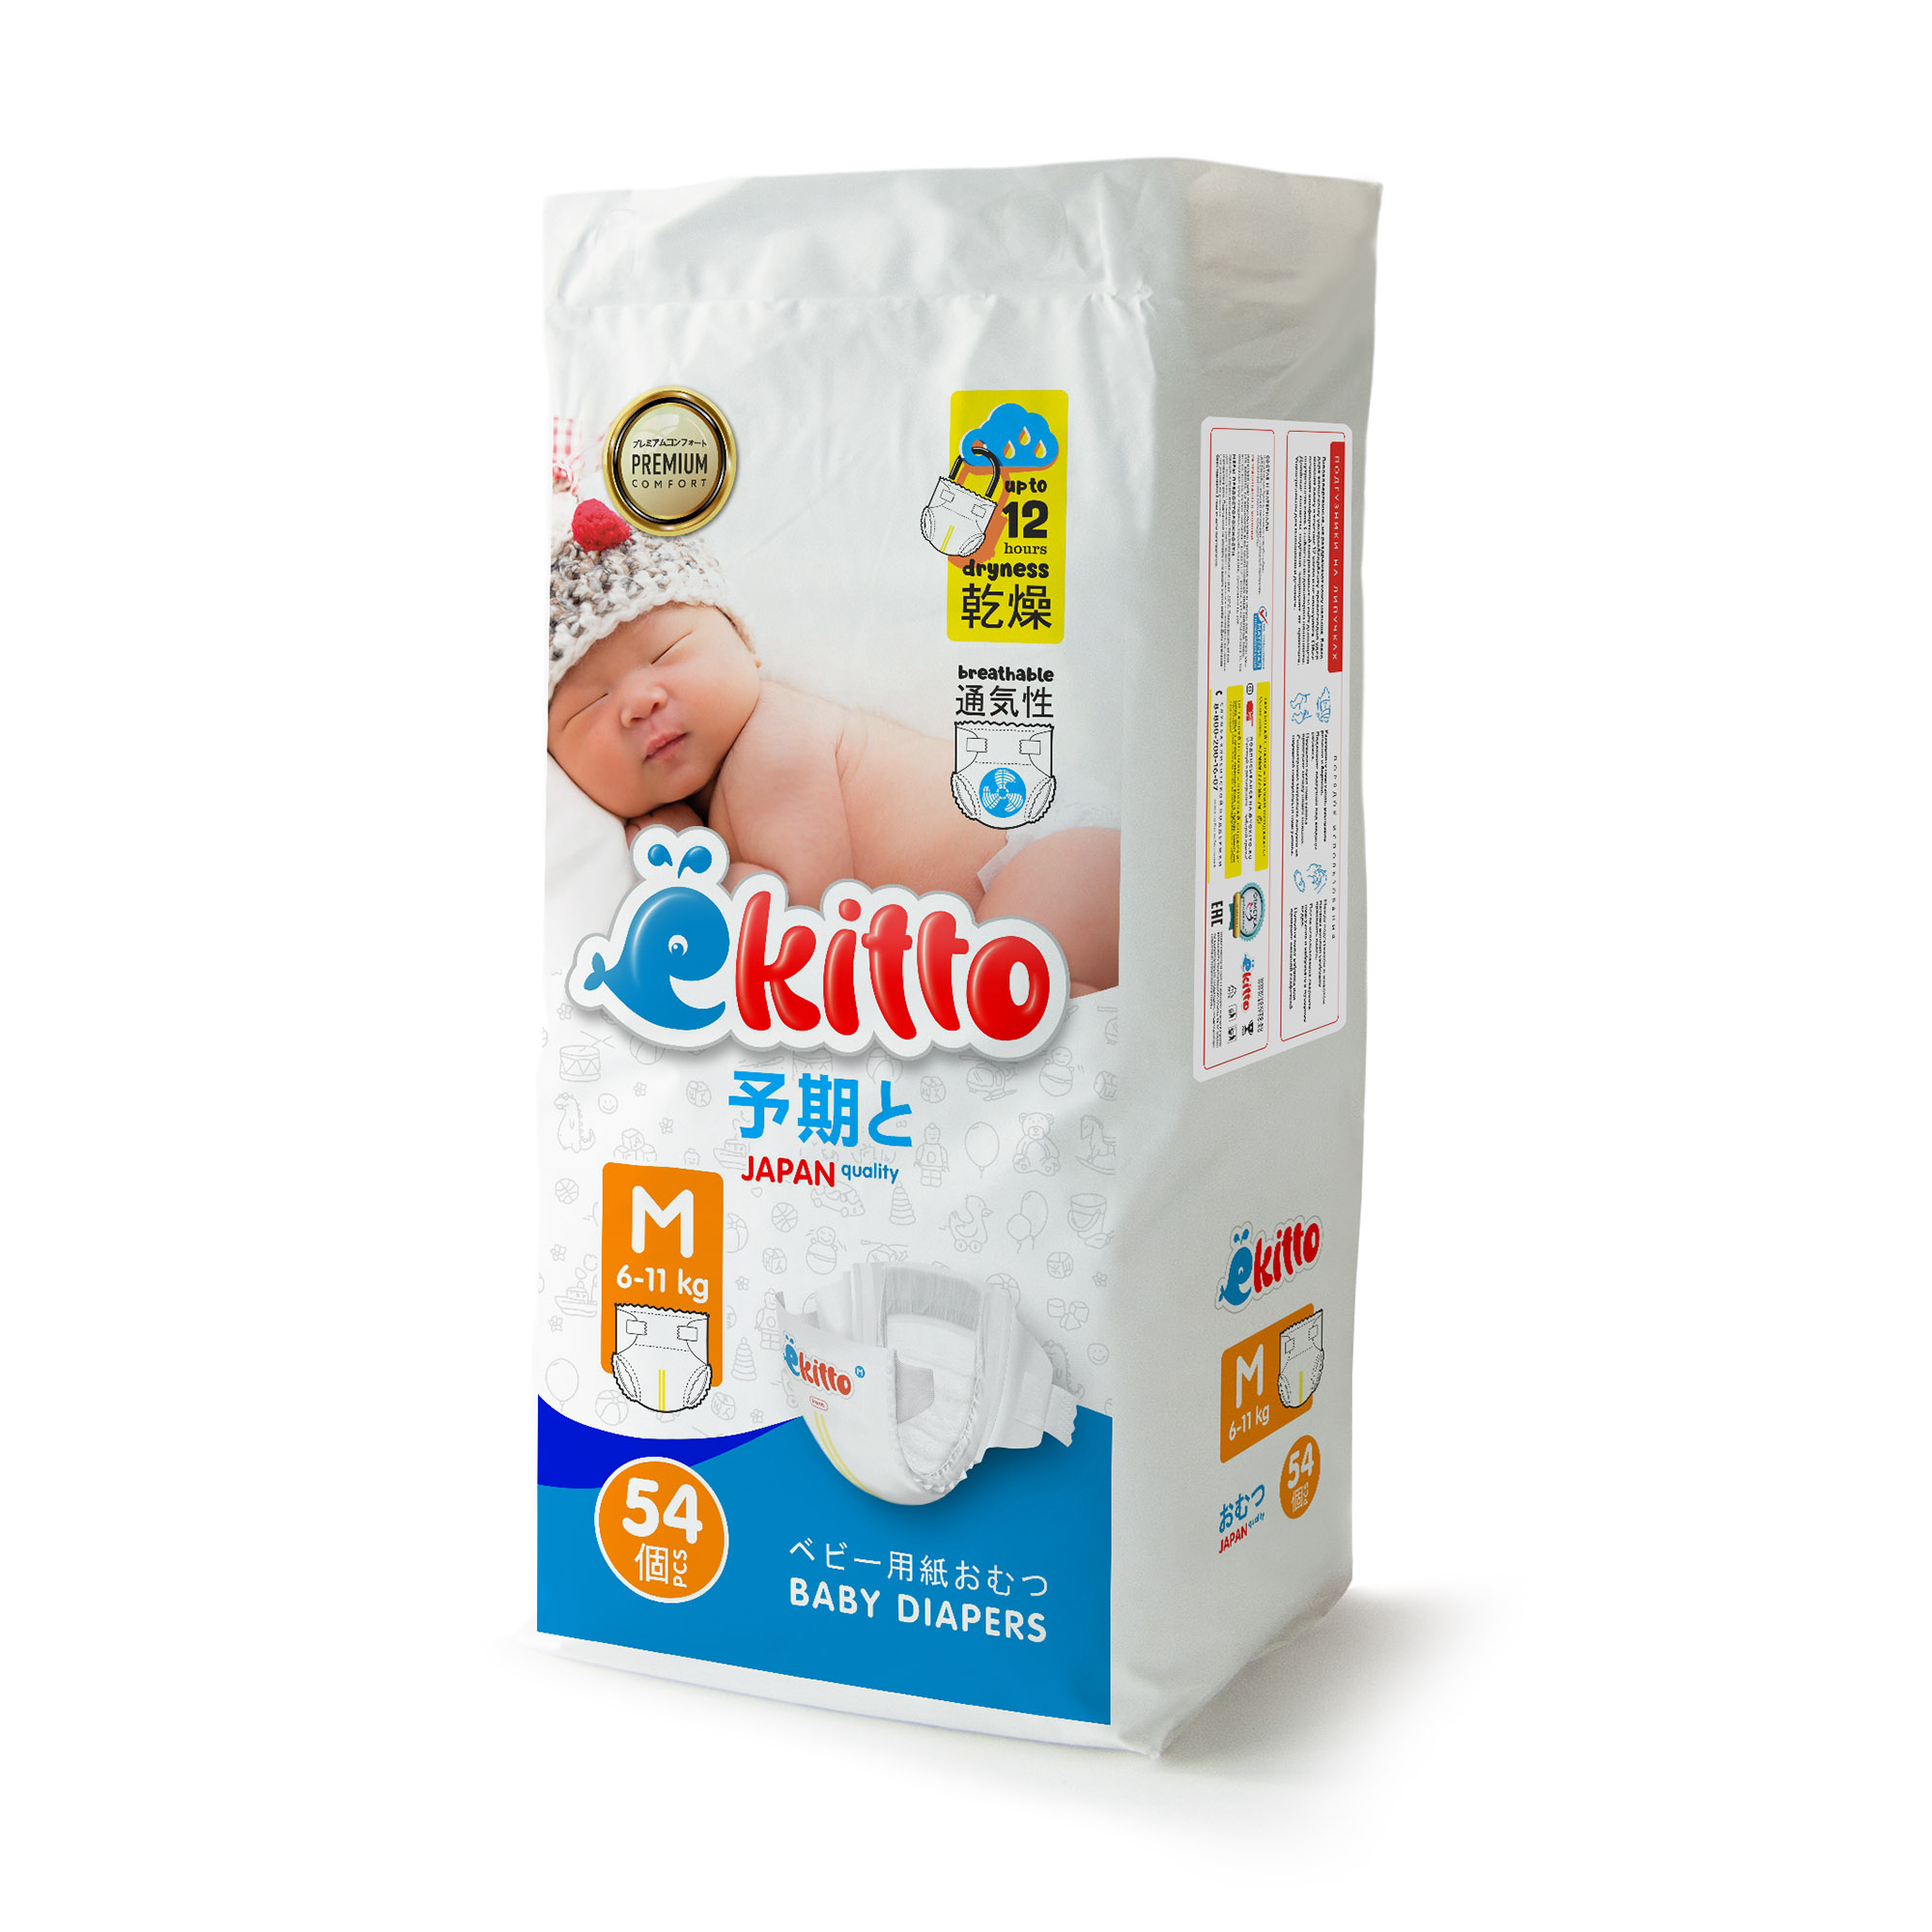 Подгузники Ekitto 3 размер M для новорожденных детей от 6-11 кг 54 шт - фото 10